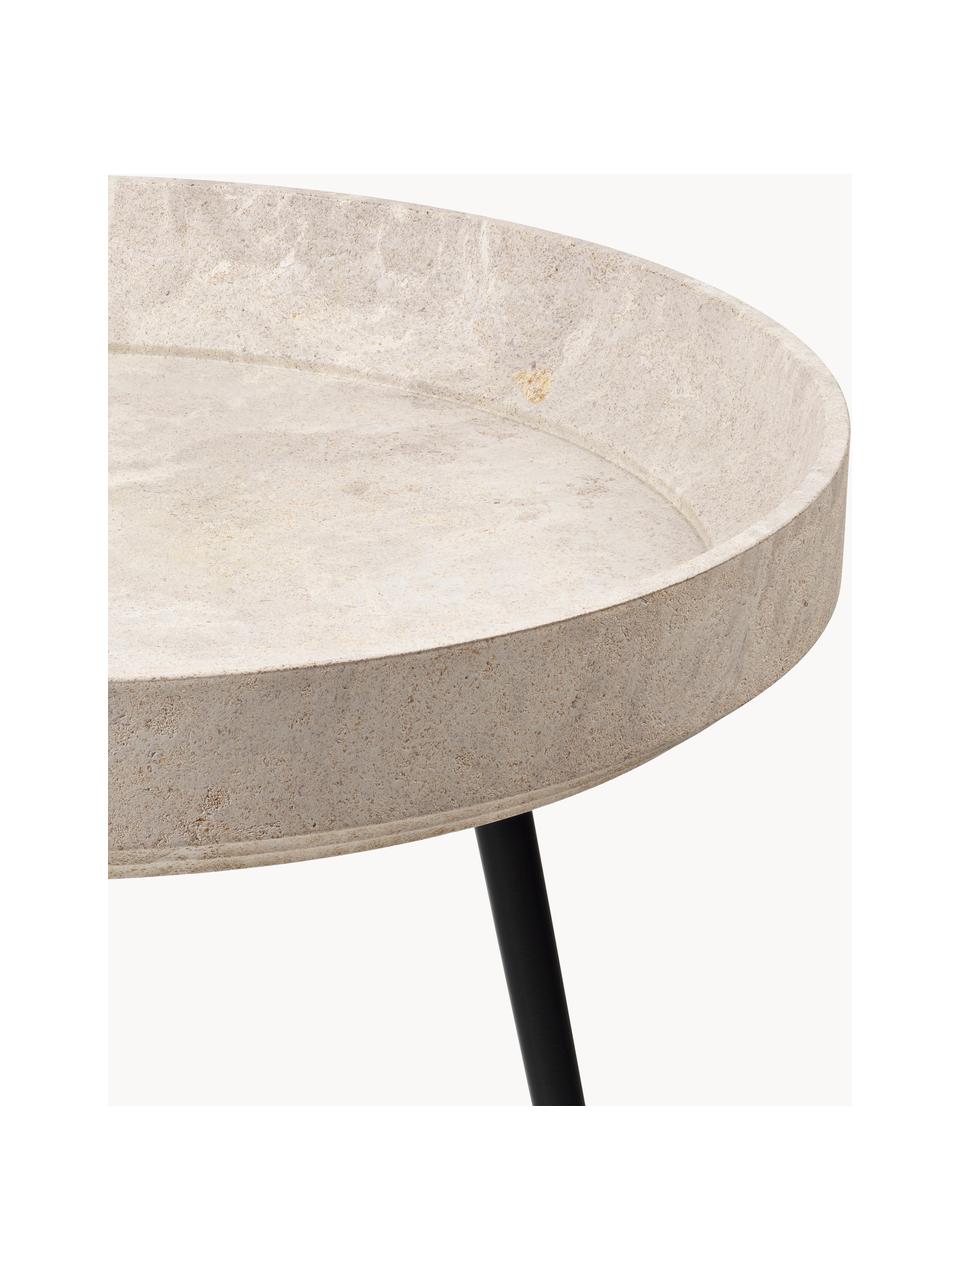 Ręcznie wykonany okrągły stolik pomocniczy z drewna dębowego Bowl, Blat: drewno dębowe z certyfika, Nogi: tworzywo sztuczne z recyk, Drewno dębowe lakierowane na jasnobeżowo, Ø 46 x W 55 cm